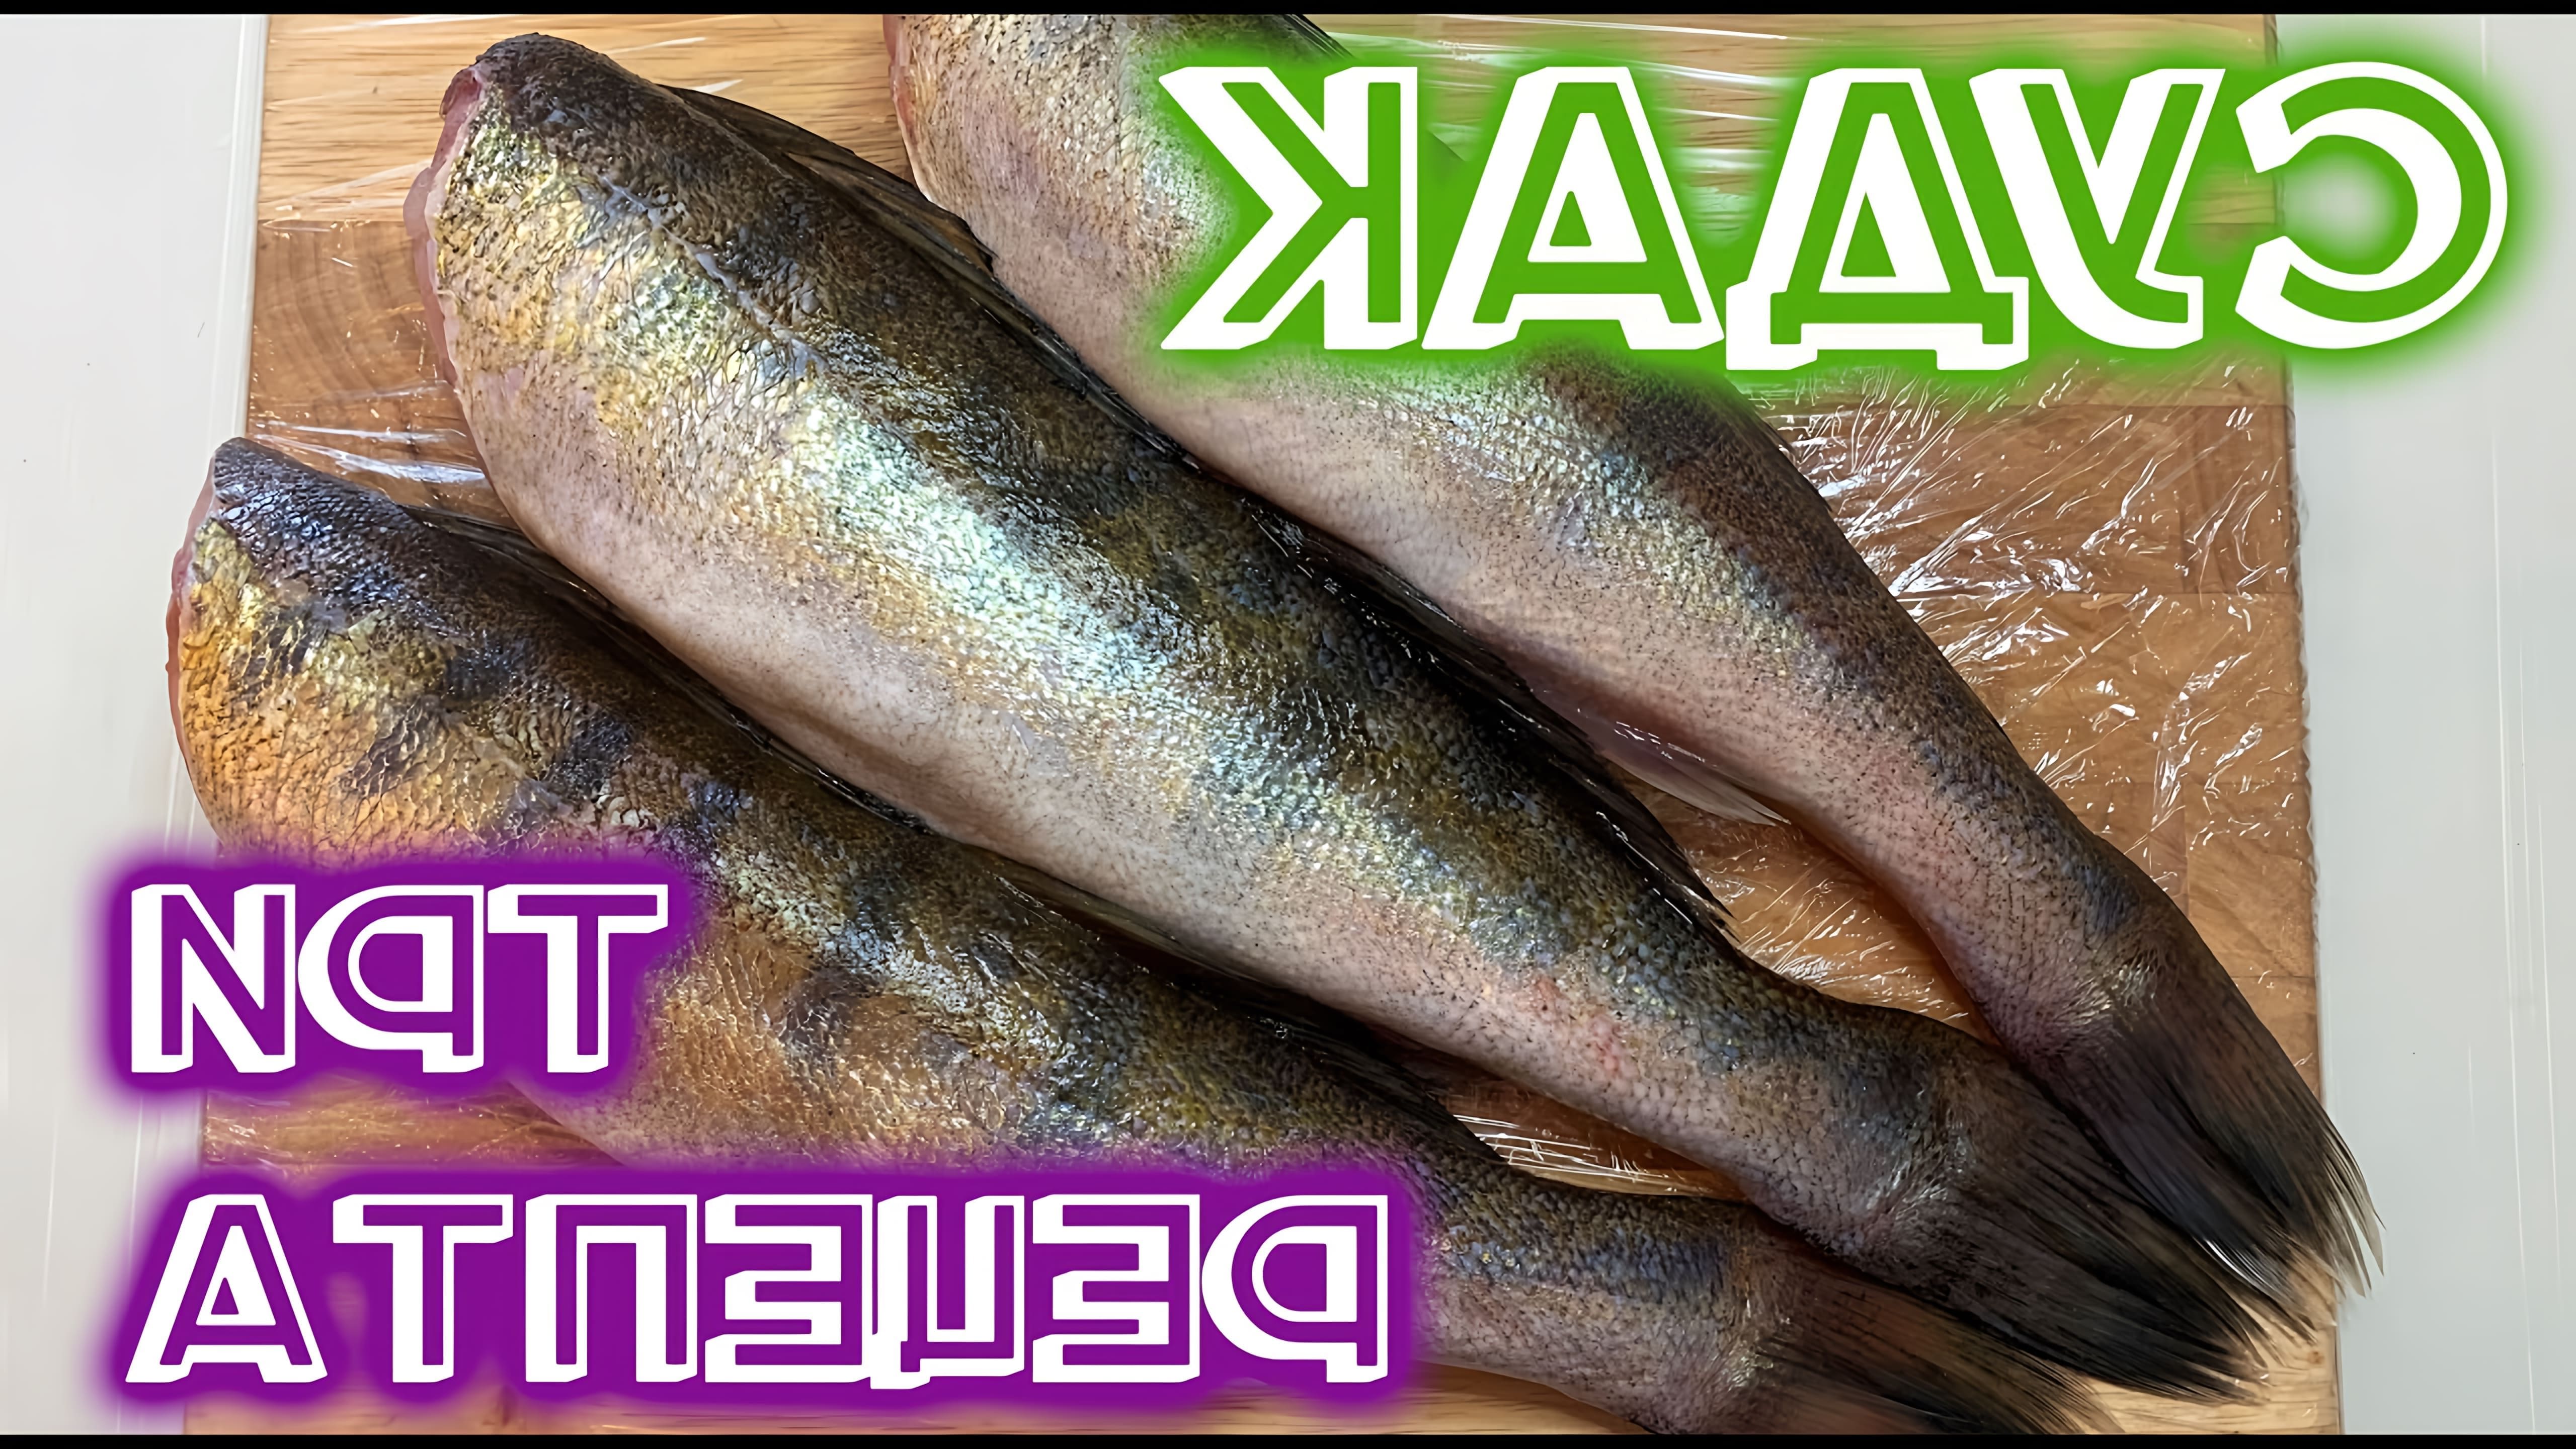 судак#рецепт#рыба Судак очень вкусная, не жирная, диетическая рыба! Мясо его белое, плотное, не имеет мелких костей, ... 